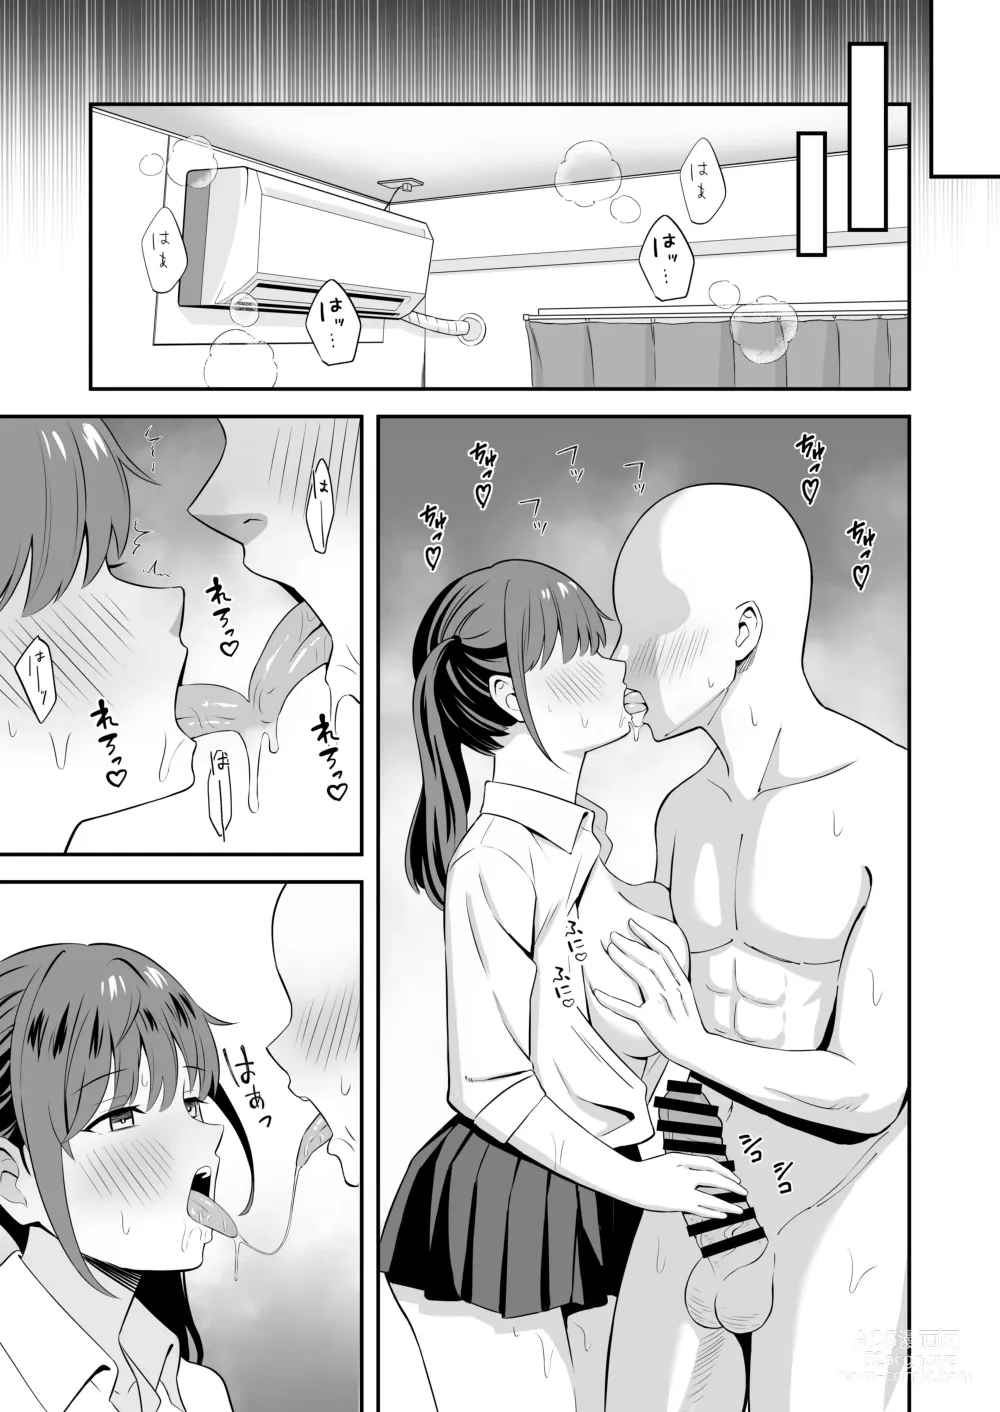 Page 9 of doujinshi 아저씨에게 형편 좋은 폭유 가출 갸루